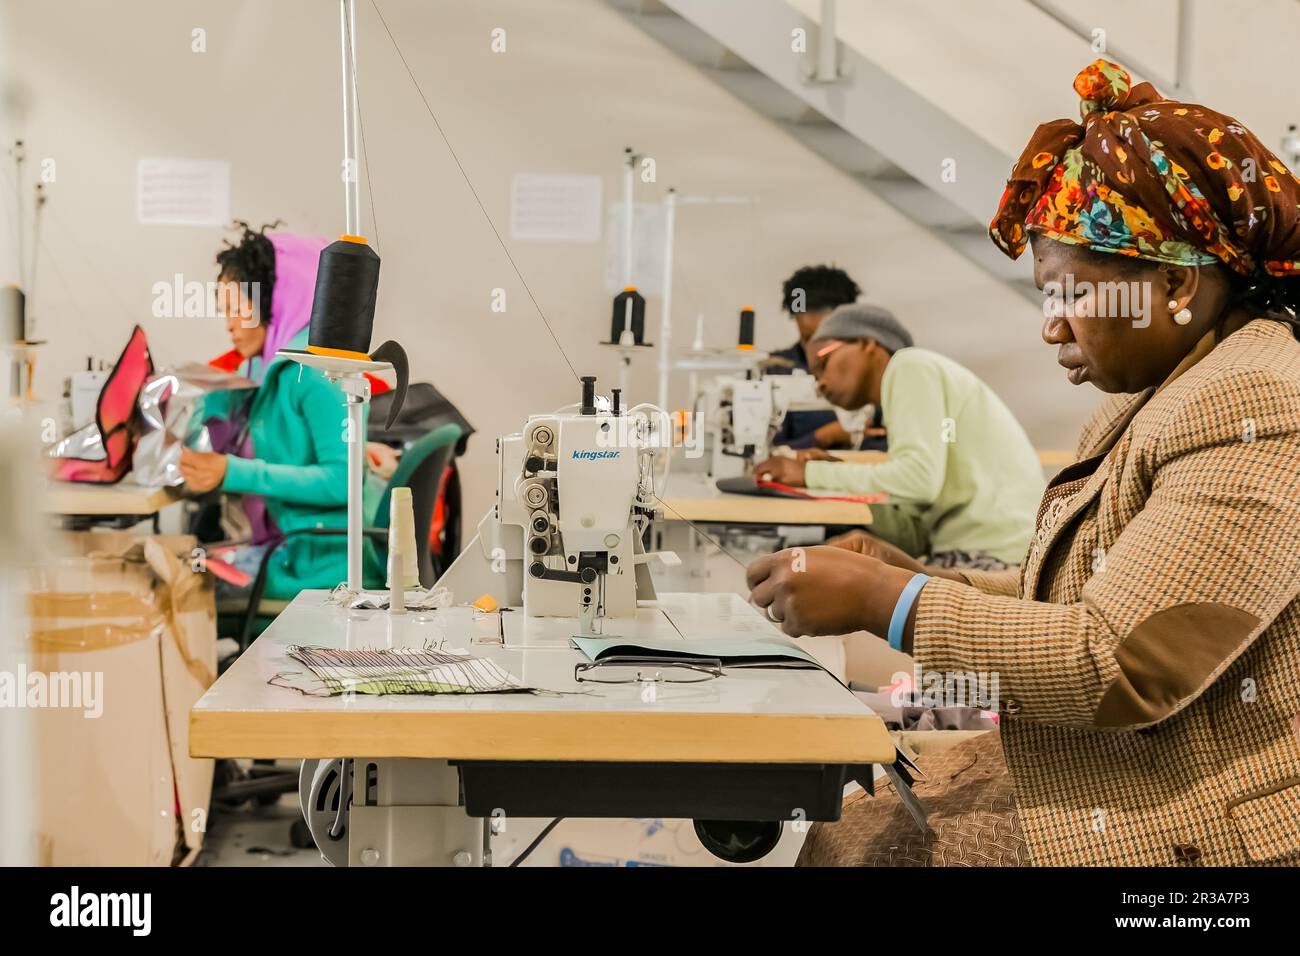 Matelots africains féminins travaillant sur des vêtements faits à la main sur une machine à coudre Banque D'Images